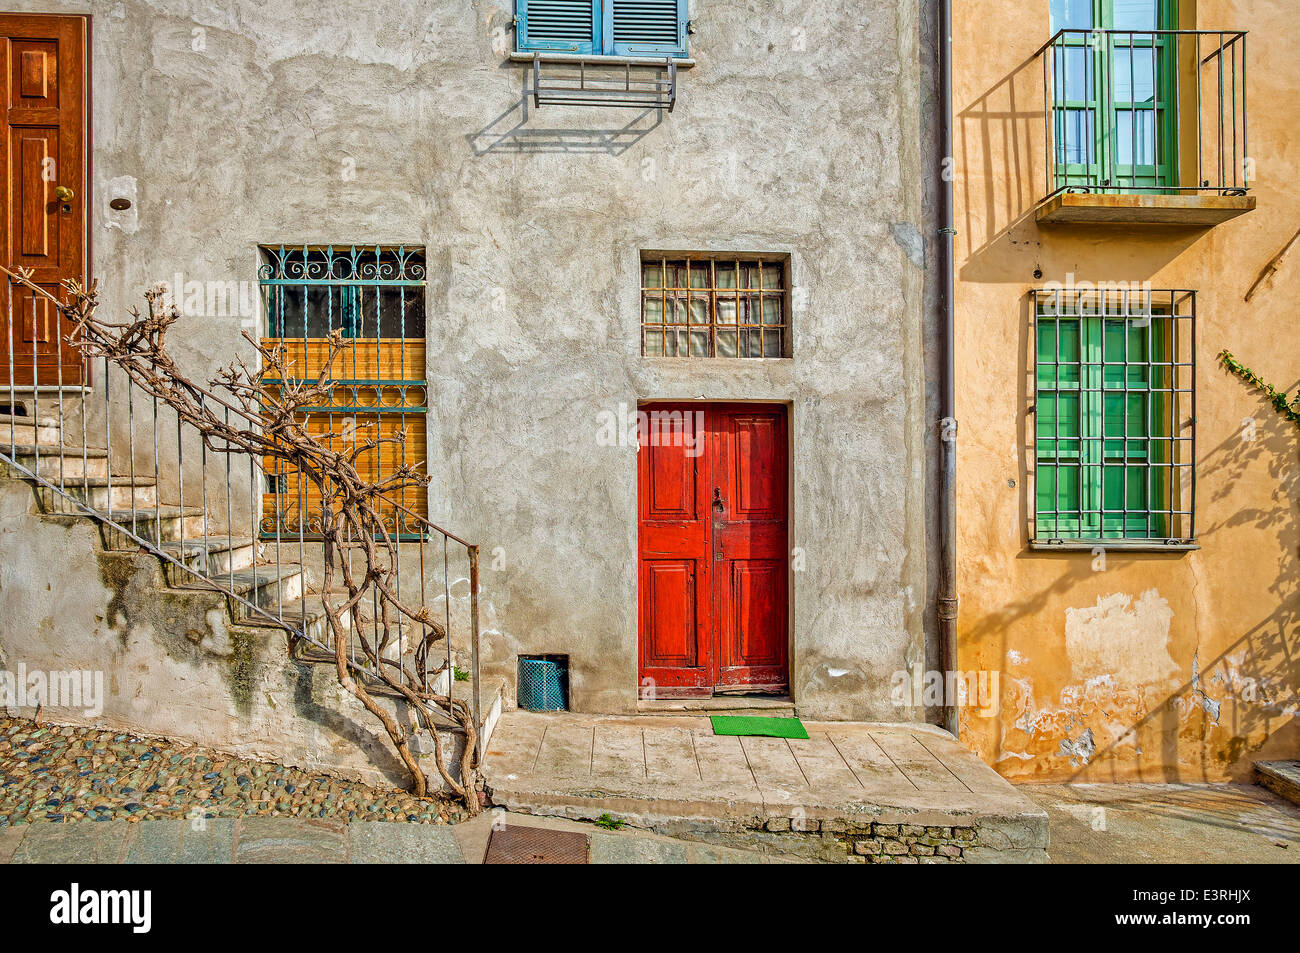 La facciata della tipica casa italiana con colorate le finestre e le porte nella città di Saluzzo in Piemonte, Italia settentrionale. Foto Stock